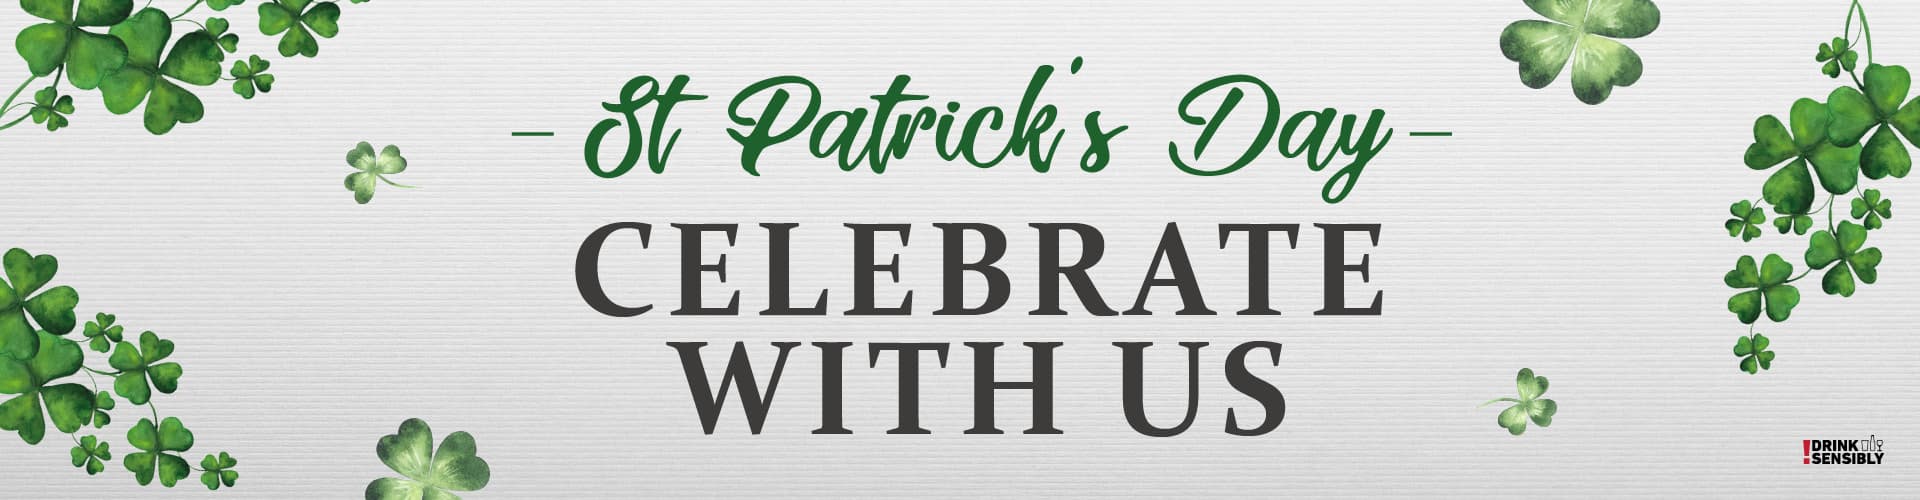 Celebrate St Patrick's Day in Derby